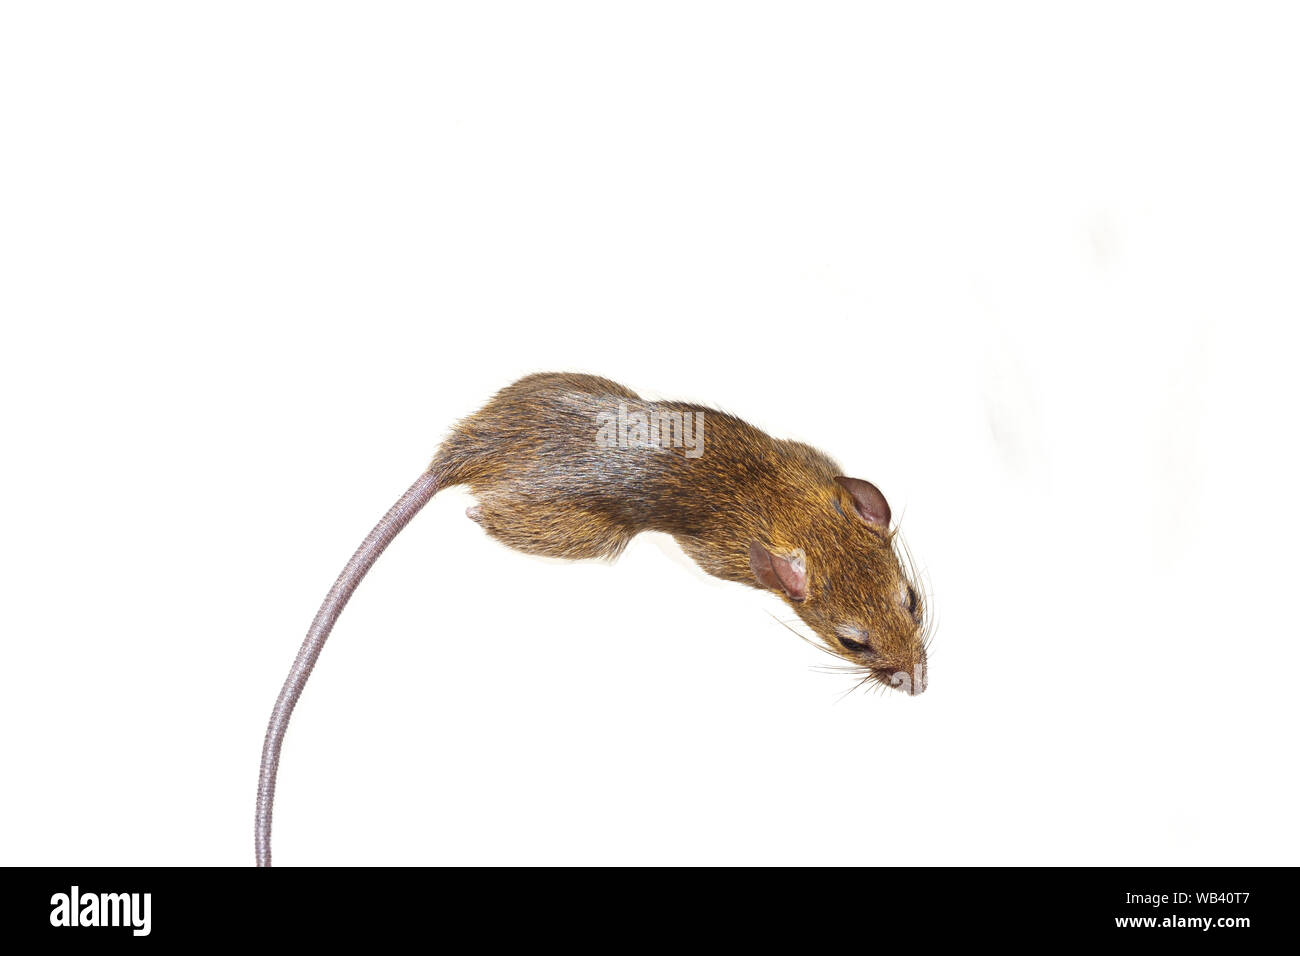 Isolato di ratto su sfondo bianco, Mouse è di roditori che causano la sporcizia e possono essere portatori di malattie, topi in vista da sopra Foto Stock